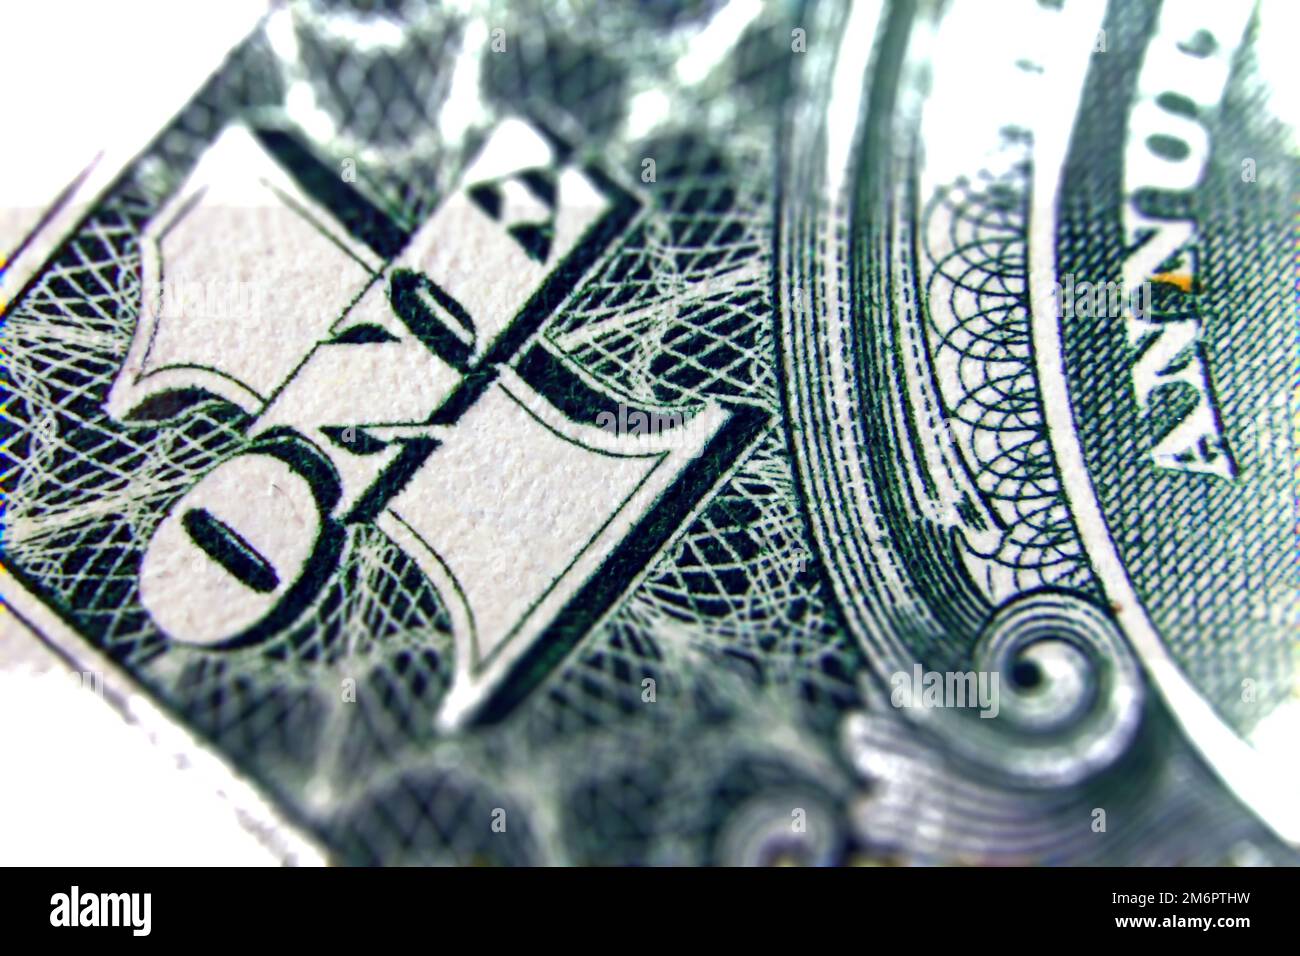 Der Makro von einem Dollarschein wurde mit einem speziellen Kippverschiebungseffekt erheblich vergrößert Stockfoto